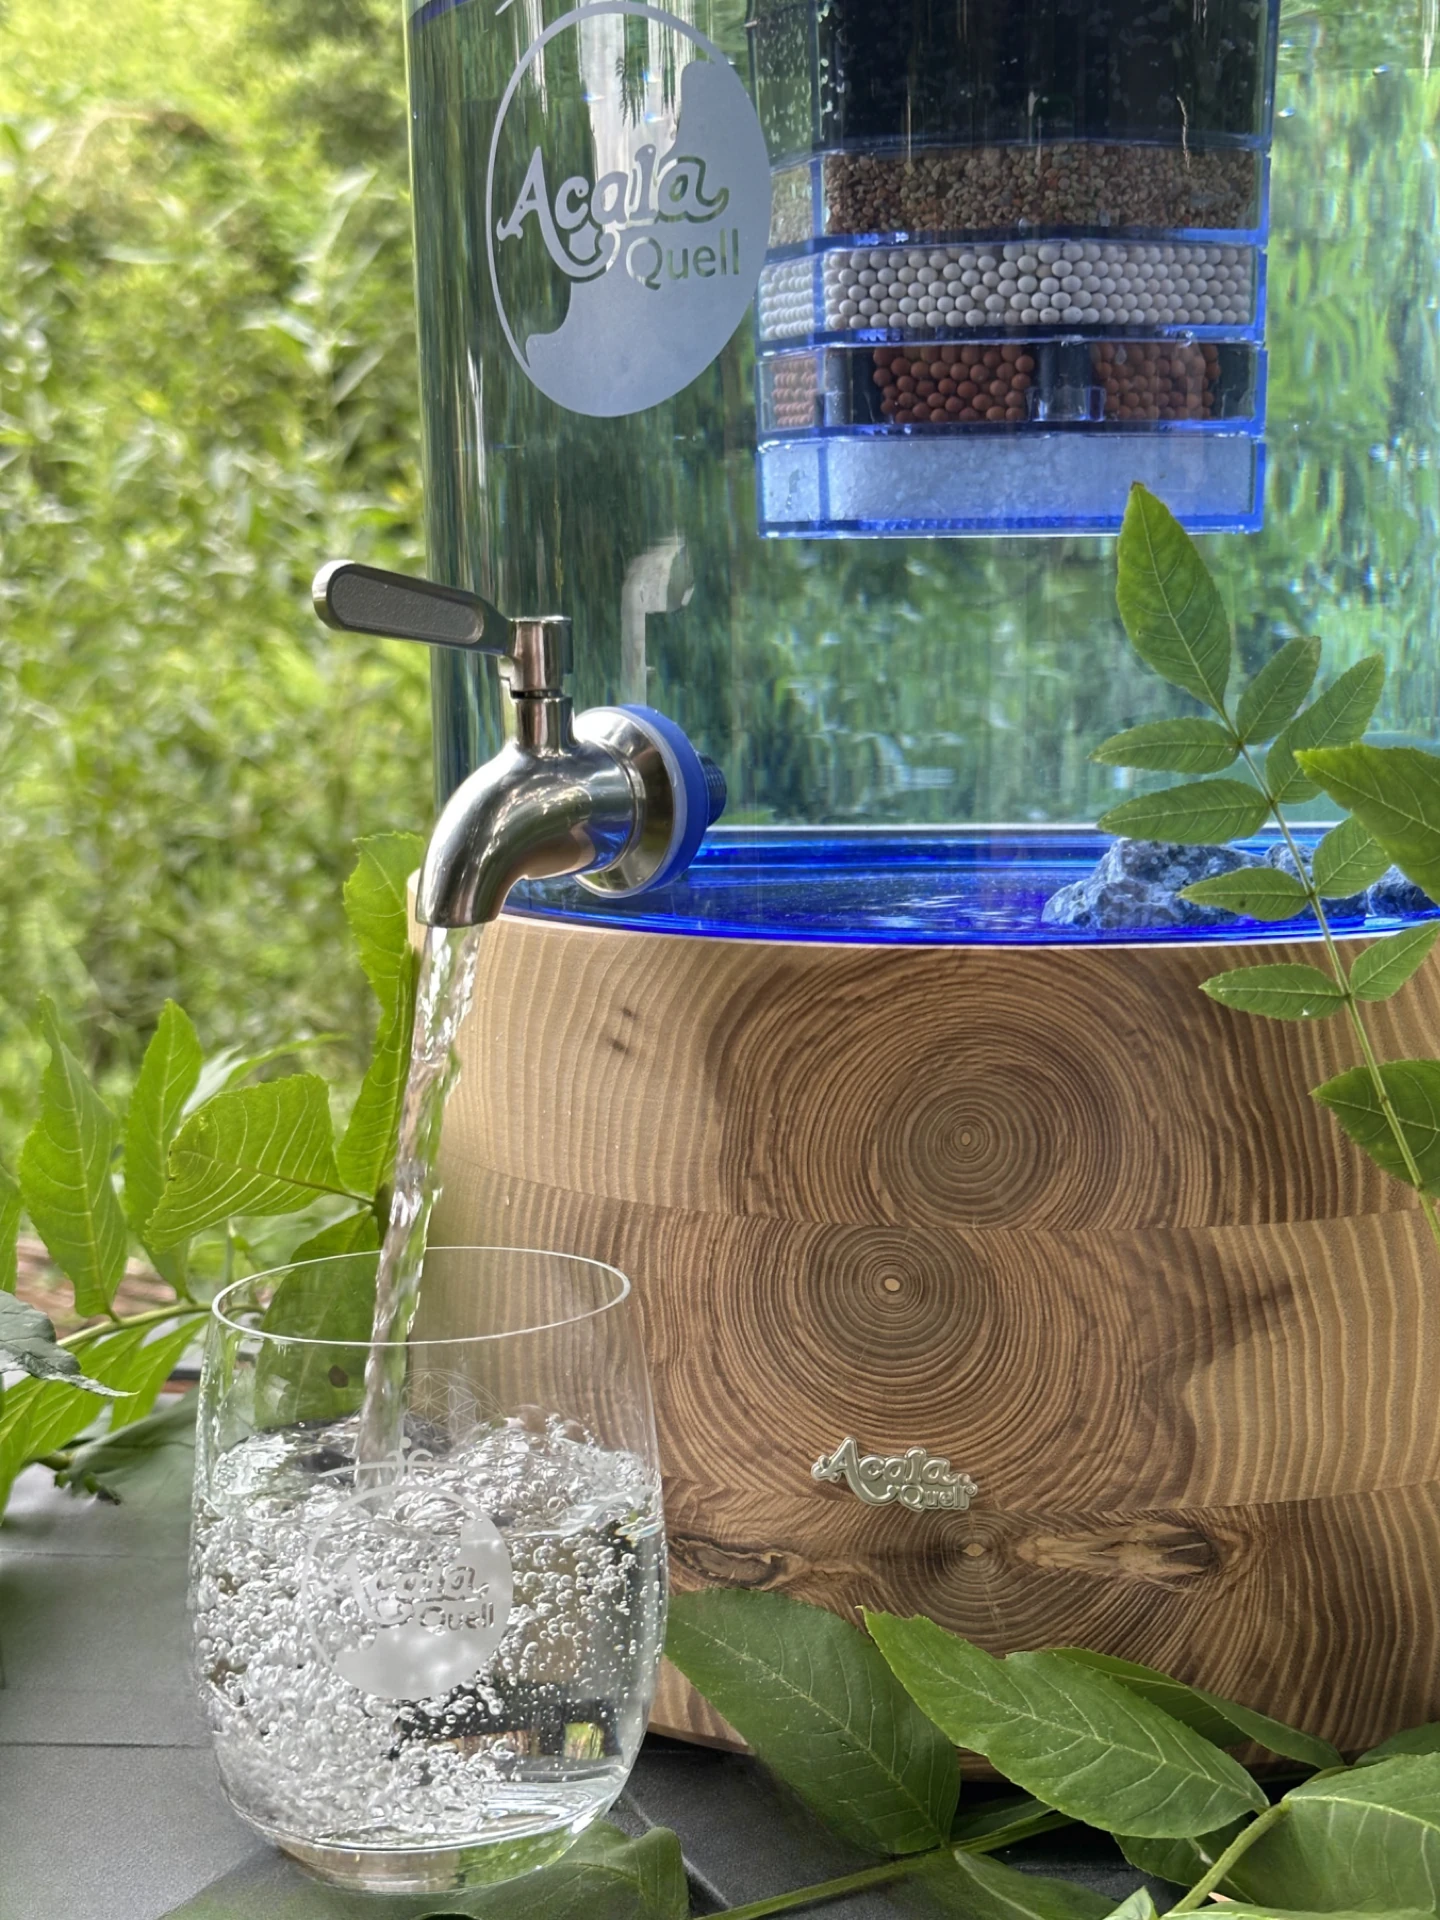 Stand Wasserfilter von Acala mit Esche Sockel, blauem Glastank und Edelstahl Wasserhahn. Aus dem Hahn läuft Wasser in ein darunter stehendes Glas. Im Hintergrund sieht man grüne Blätter, auch um den Filter herum liegen grüne Blätter.